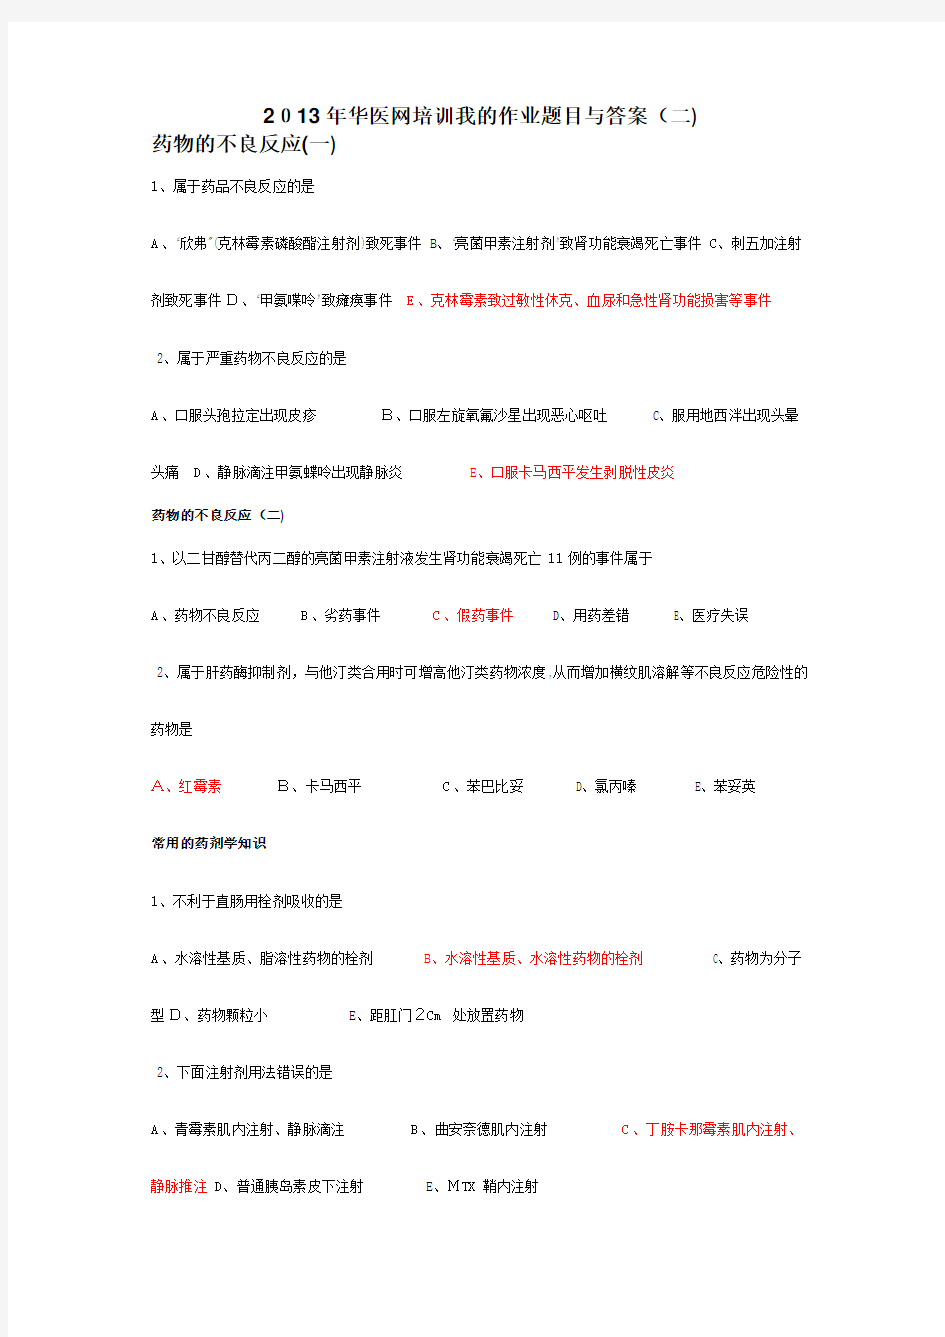 广西2013年华医网培训我的作业题目与标准答案(二)